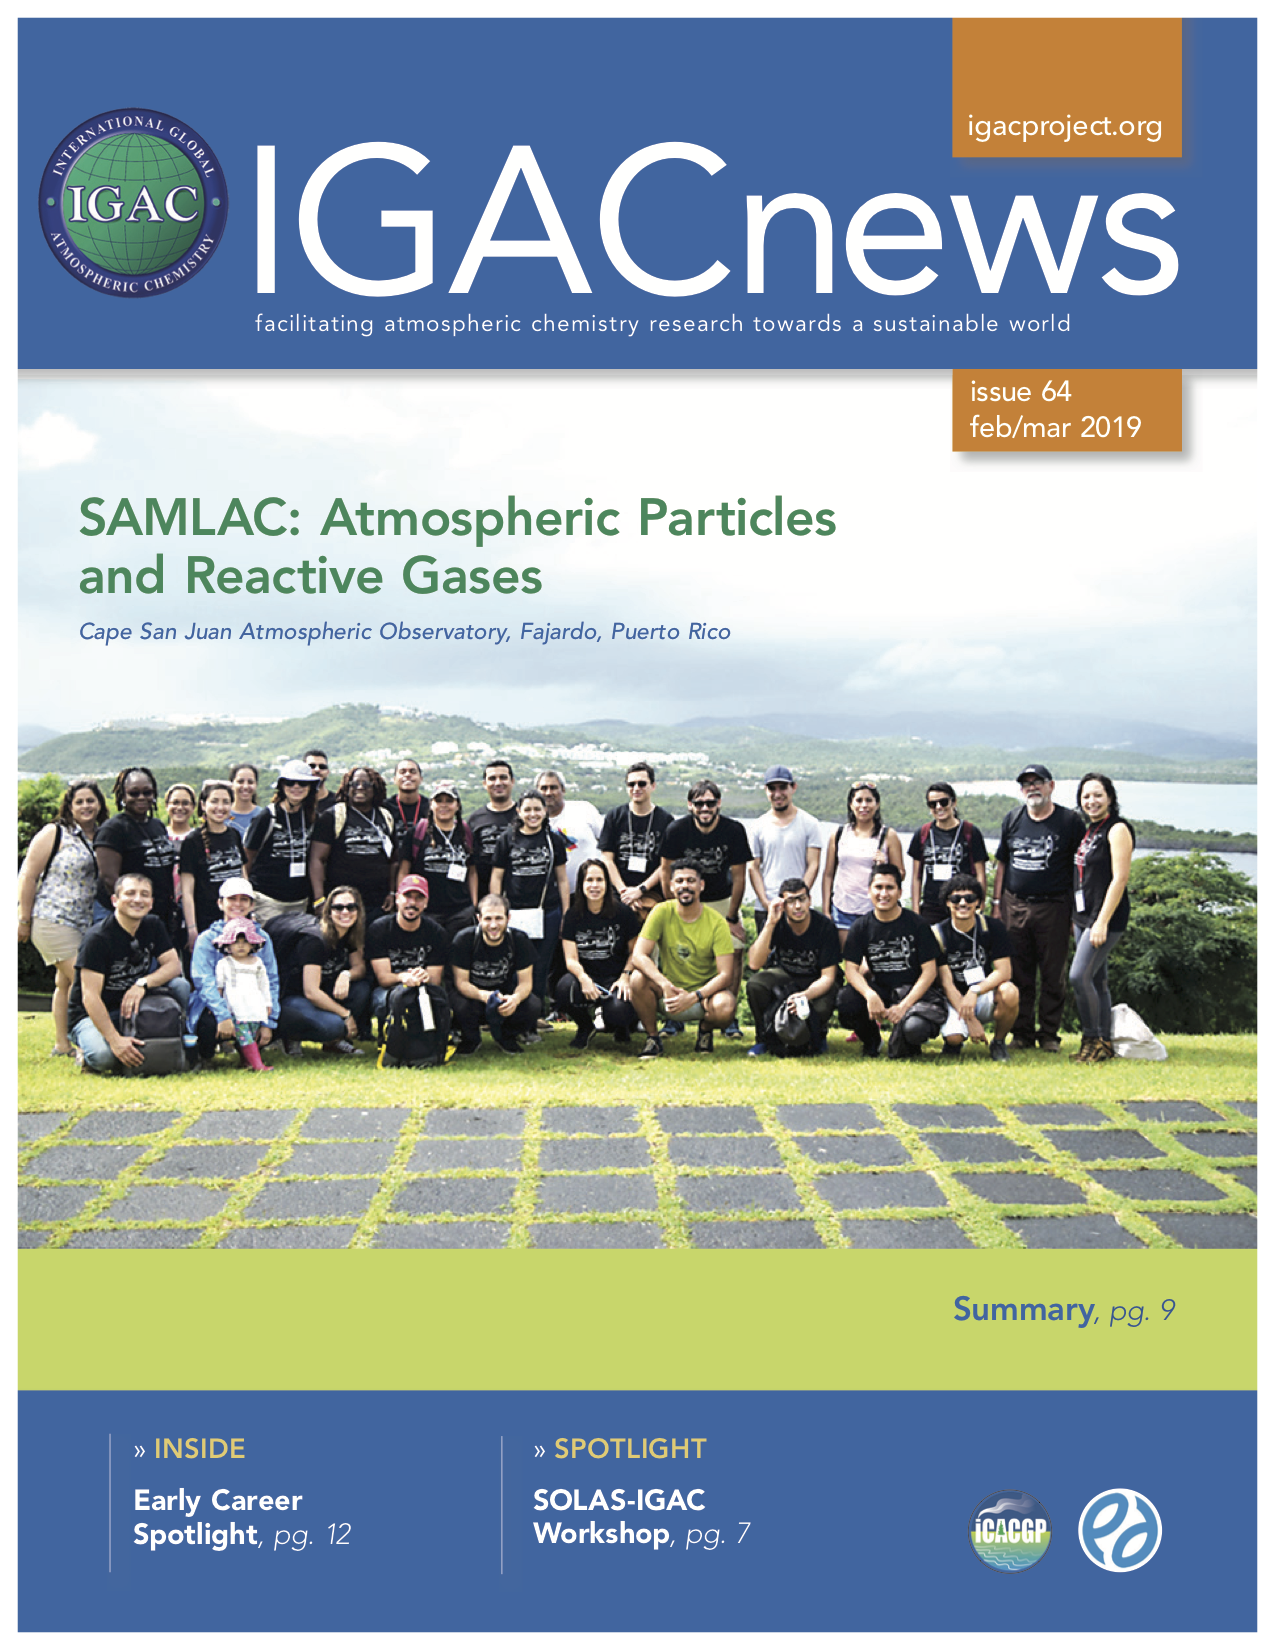 IGACnews cover image